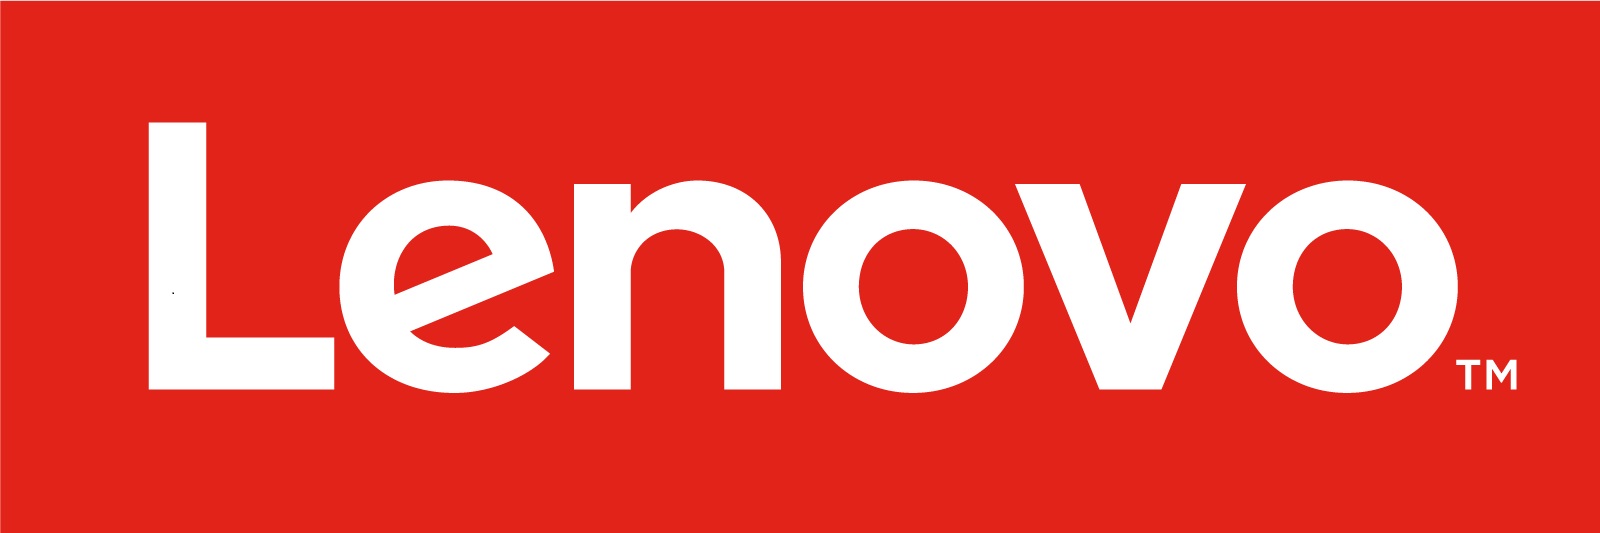 لسبب غير معلوم.. شركة Lenovo تطلق K8 Note متجاوزة إطلاق K7 Note